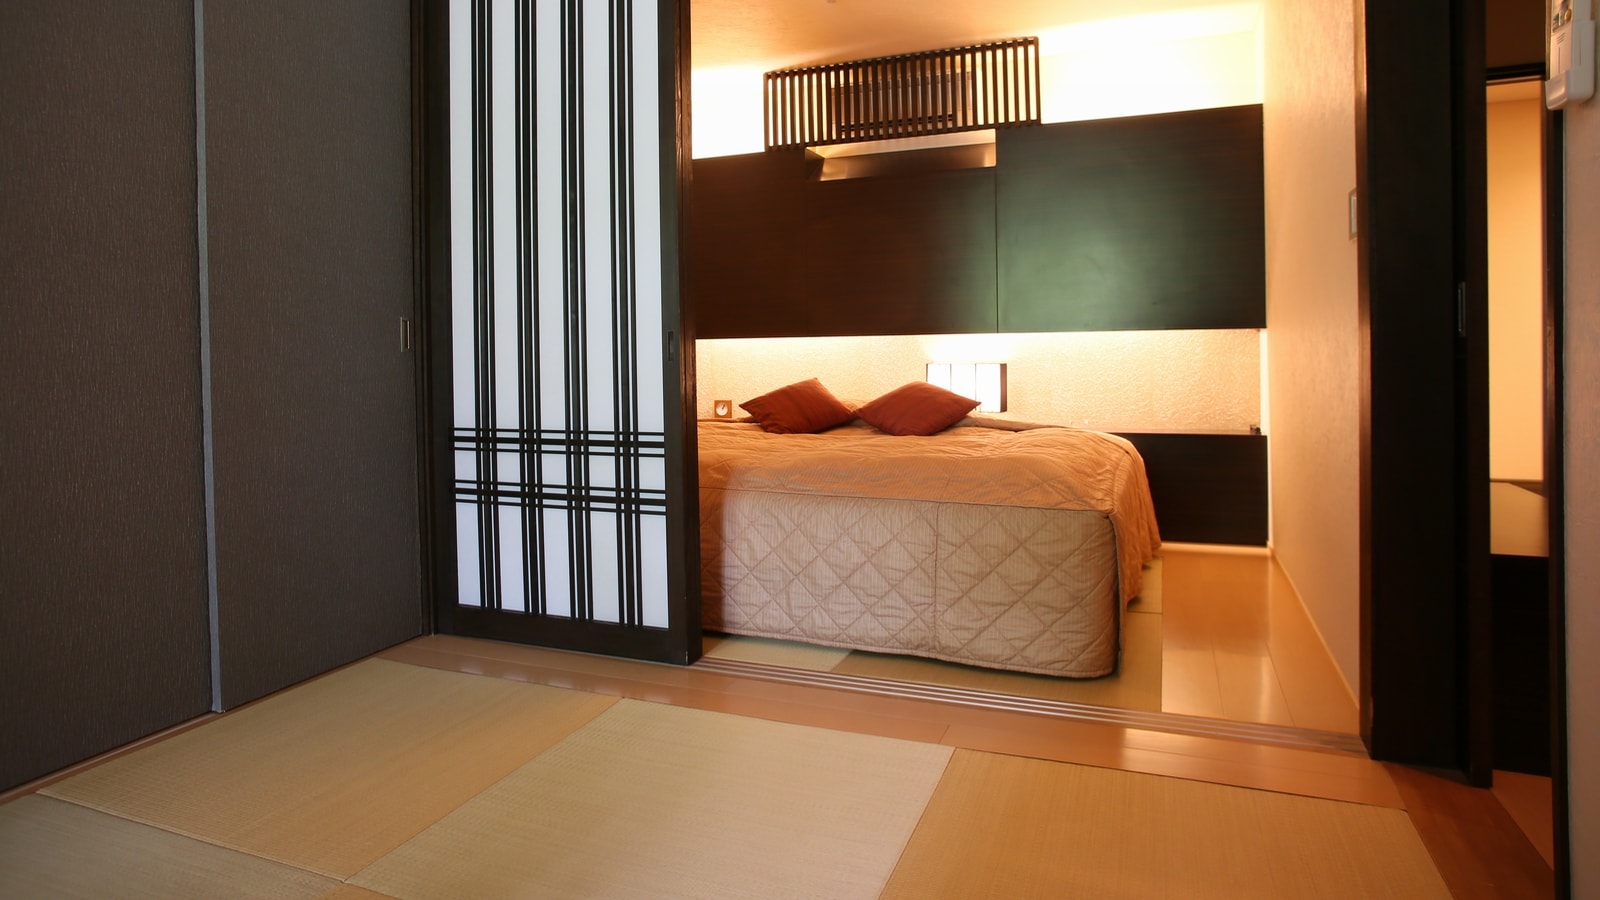 [Contoh kamar Jepang dan Barat di gedung baru] Dalam kasus tipe kembar, Anda dapat memasang dua tempat tidur dan membawanya ke dinding.